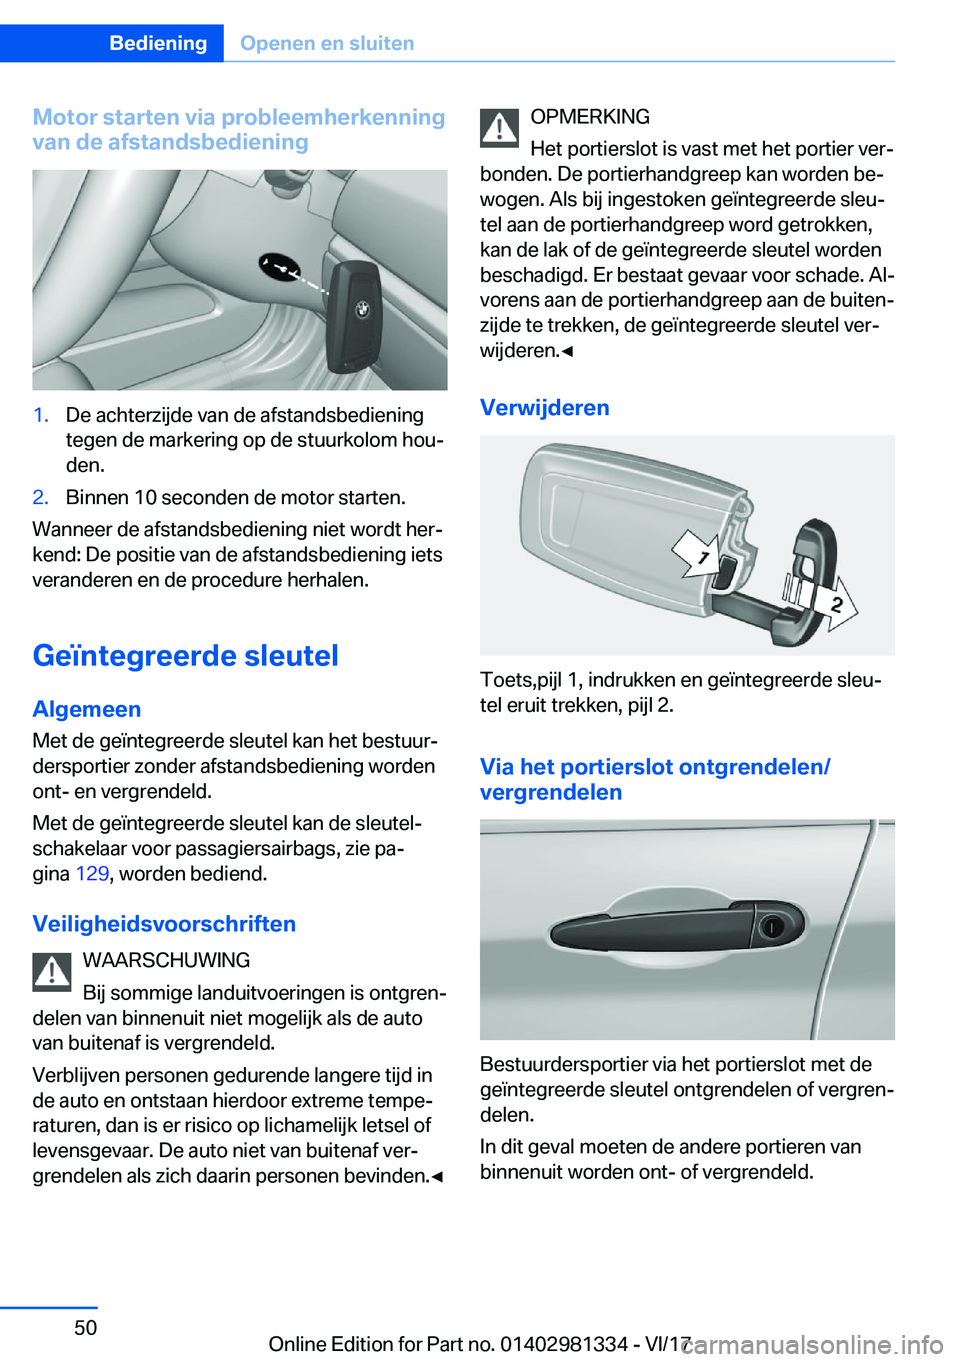 BMW X4 2018  Instructieboekjes (in Dutch) �M�o�t�o�r��s�t�a�r�t�e�n��v�i�a��p�r�o�b�l�e�e�m�h�e�r�k�e�n�n�i�n�g
�v�a�n��d�e��a�f�s�t�a�n�d�s�b�e�d�i�e�n�i�n�g�1�.�D�e� �a�c�h�t�e�r�z�i�j�d�e� �v�a�n� �d�e� �a�f�s�t�a�n�d�s�b�e�d�i�e�n�i�